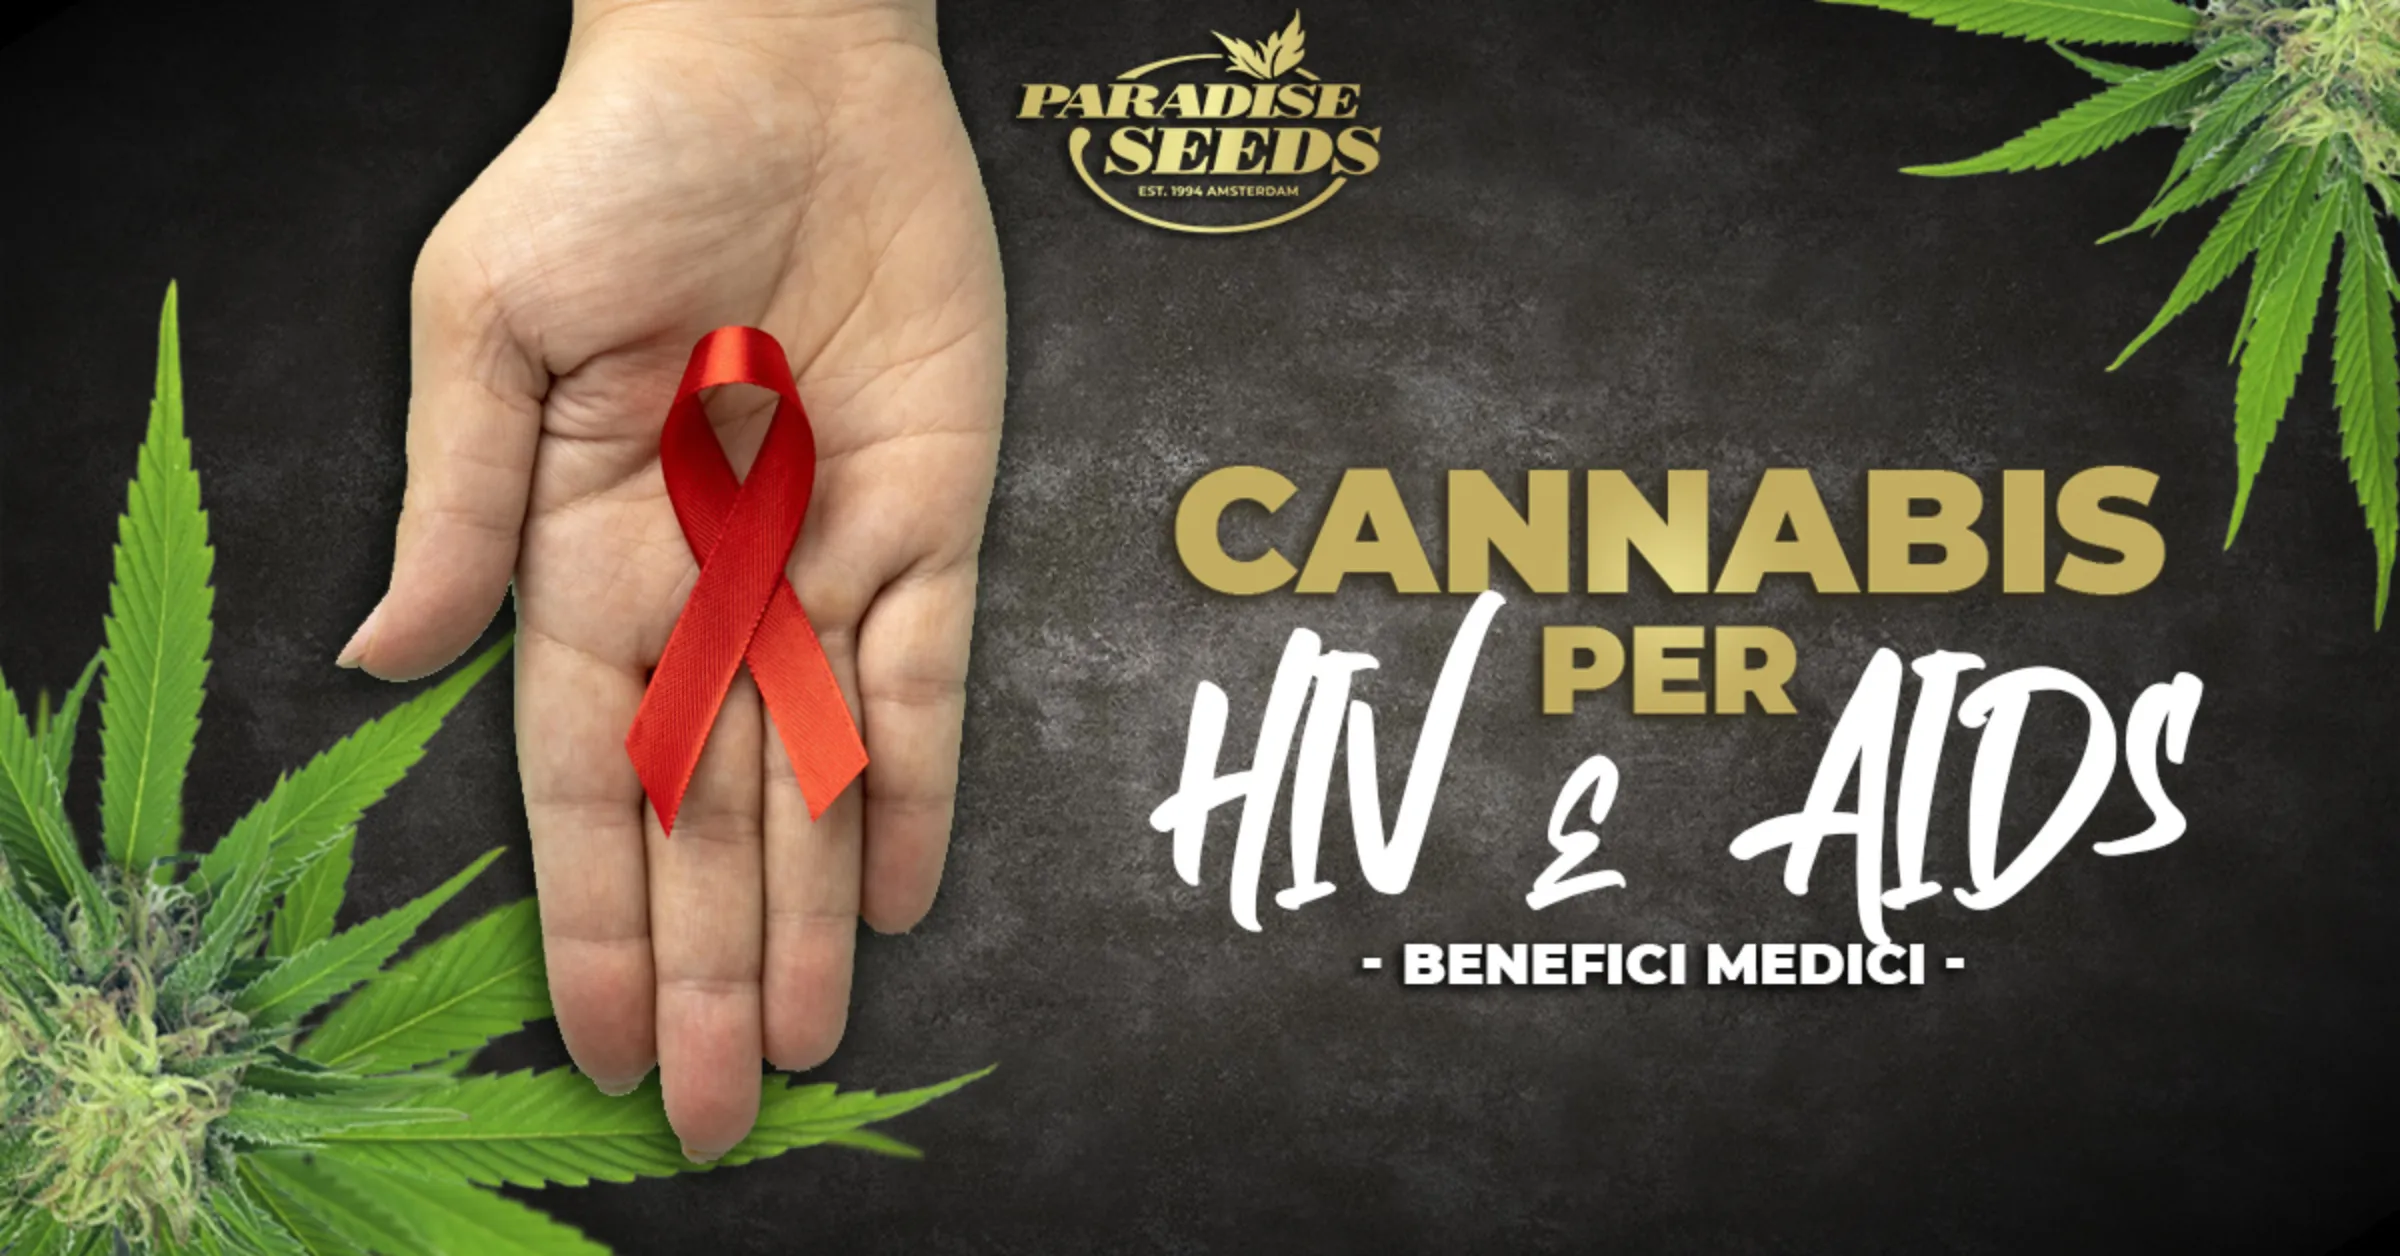 I benefici della cannabis medica per malati di HIV e AIDS | Paradise Seeds Webshop